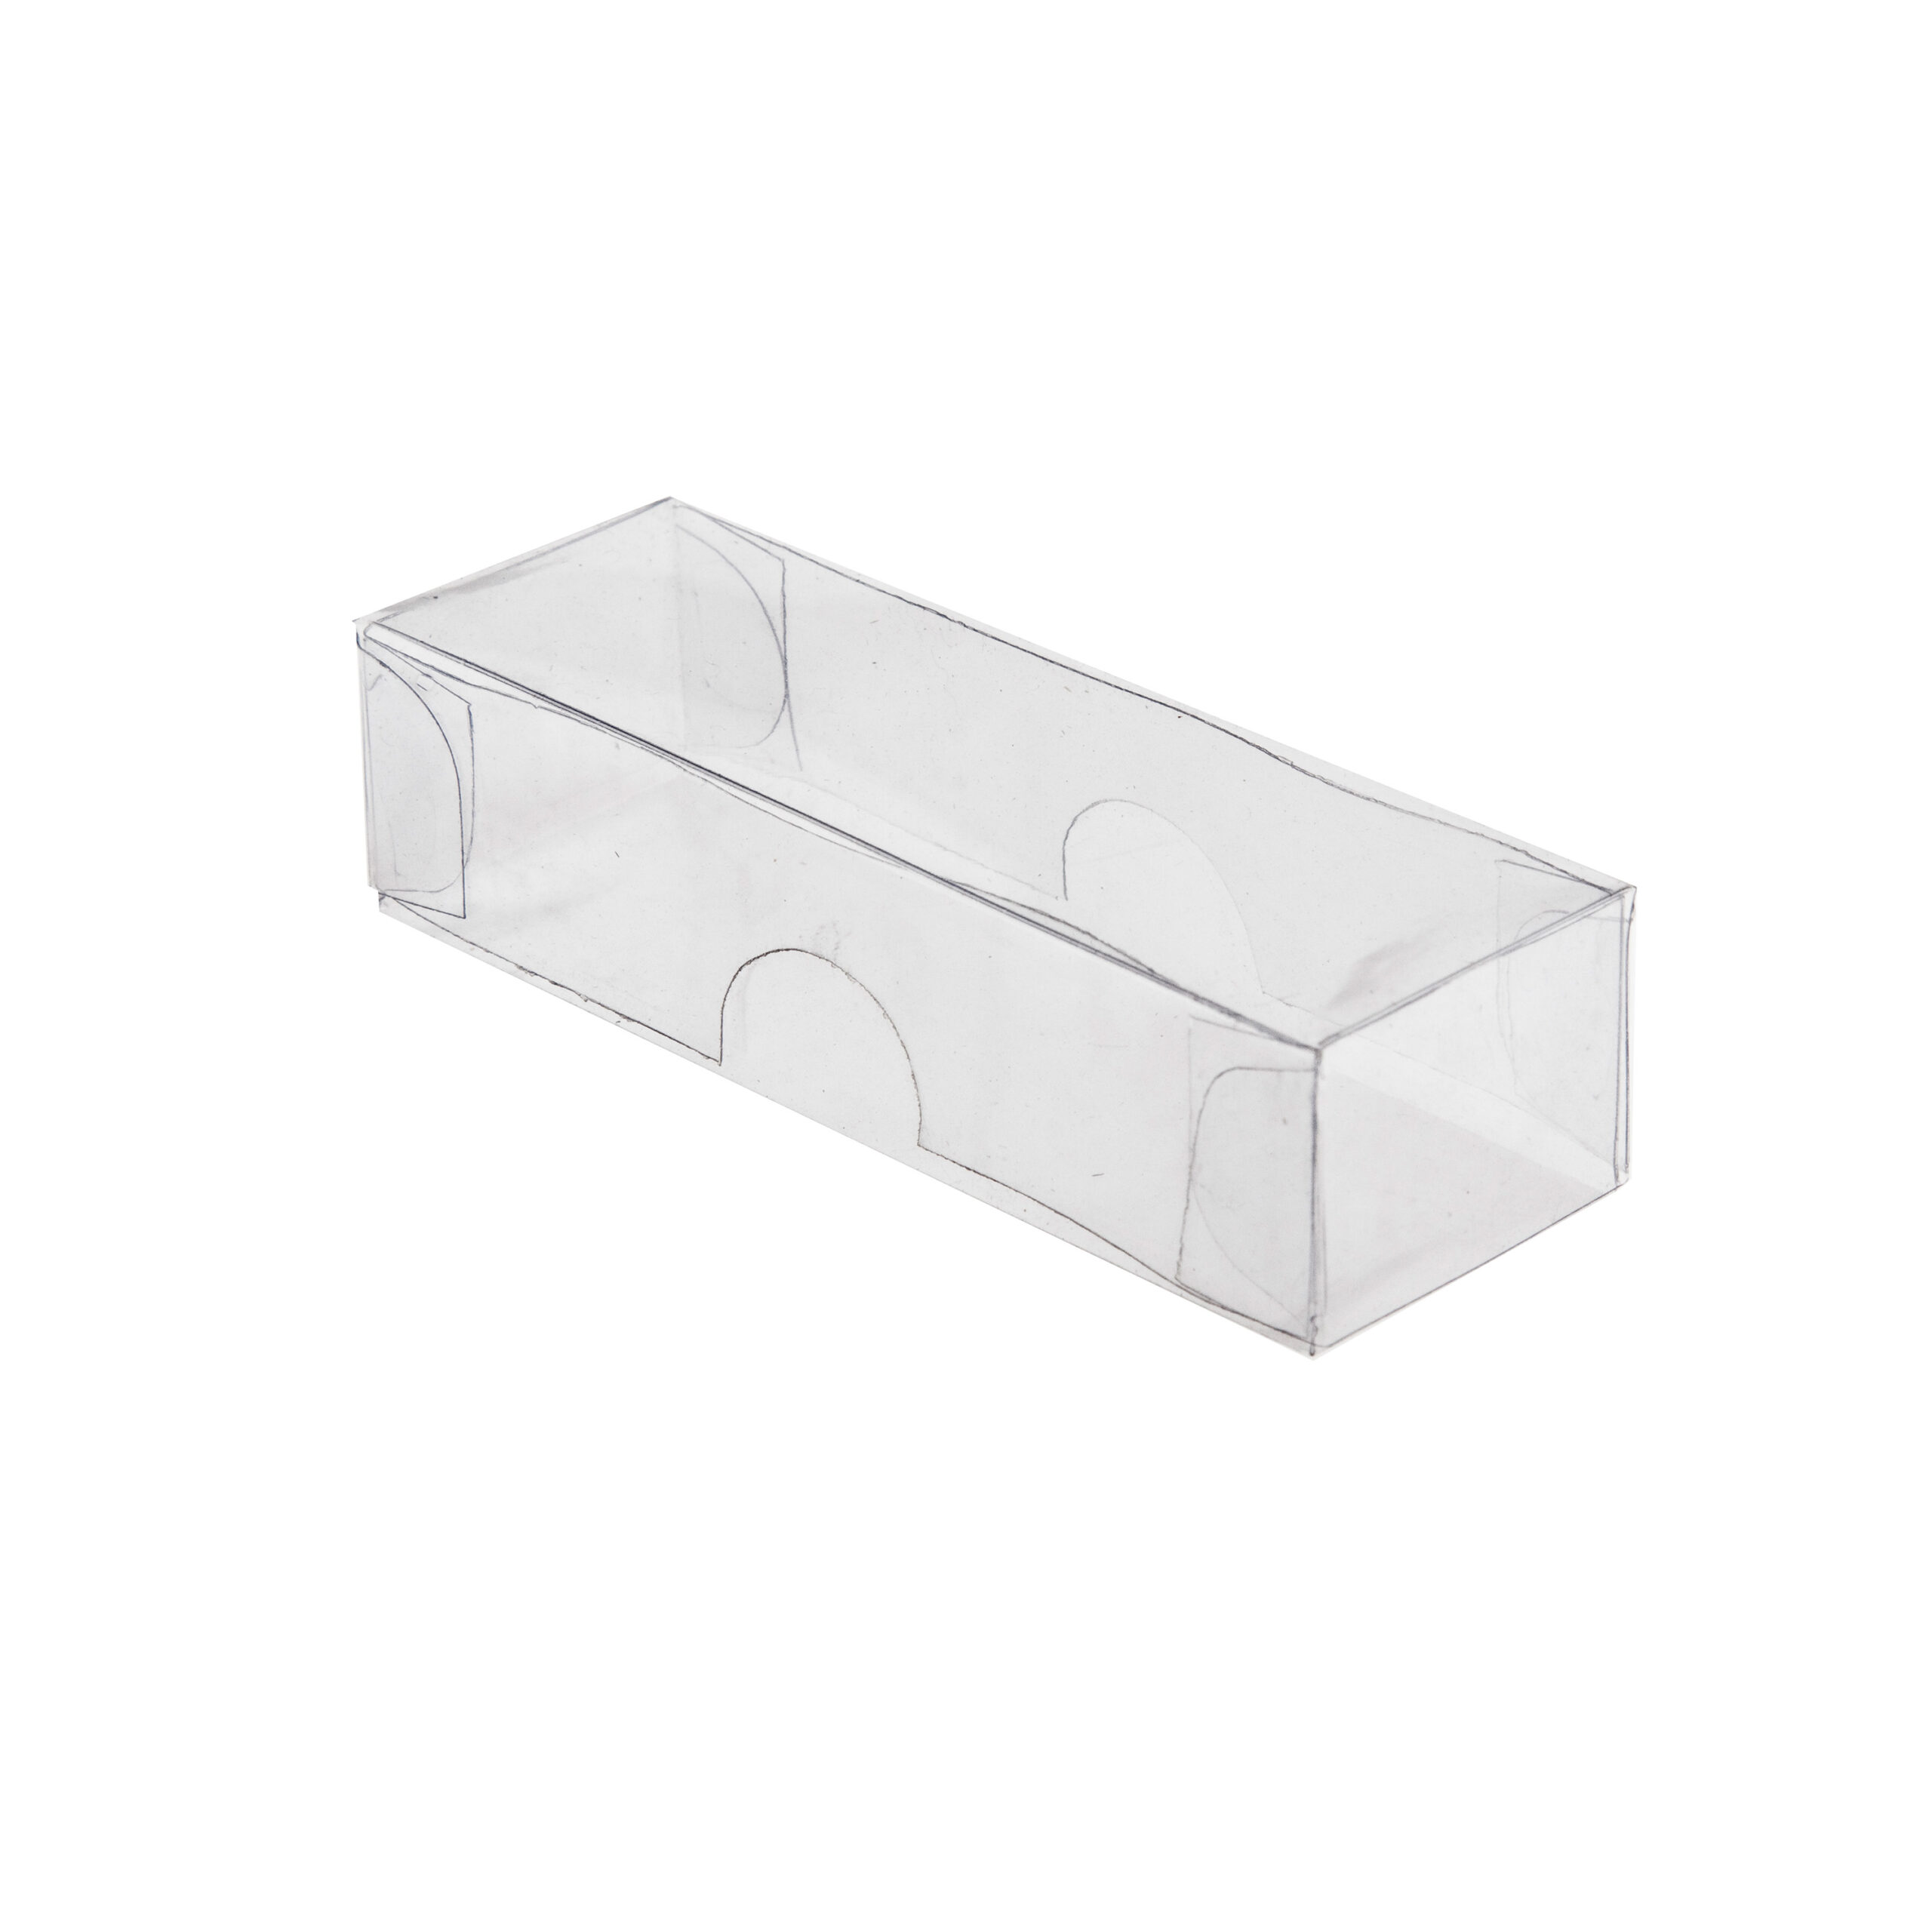 PVC BOX 3
TRUFFLE CLEAR
100x35x23mm